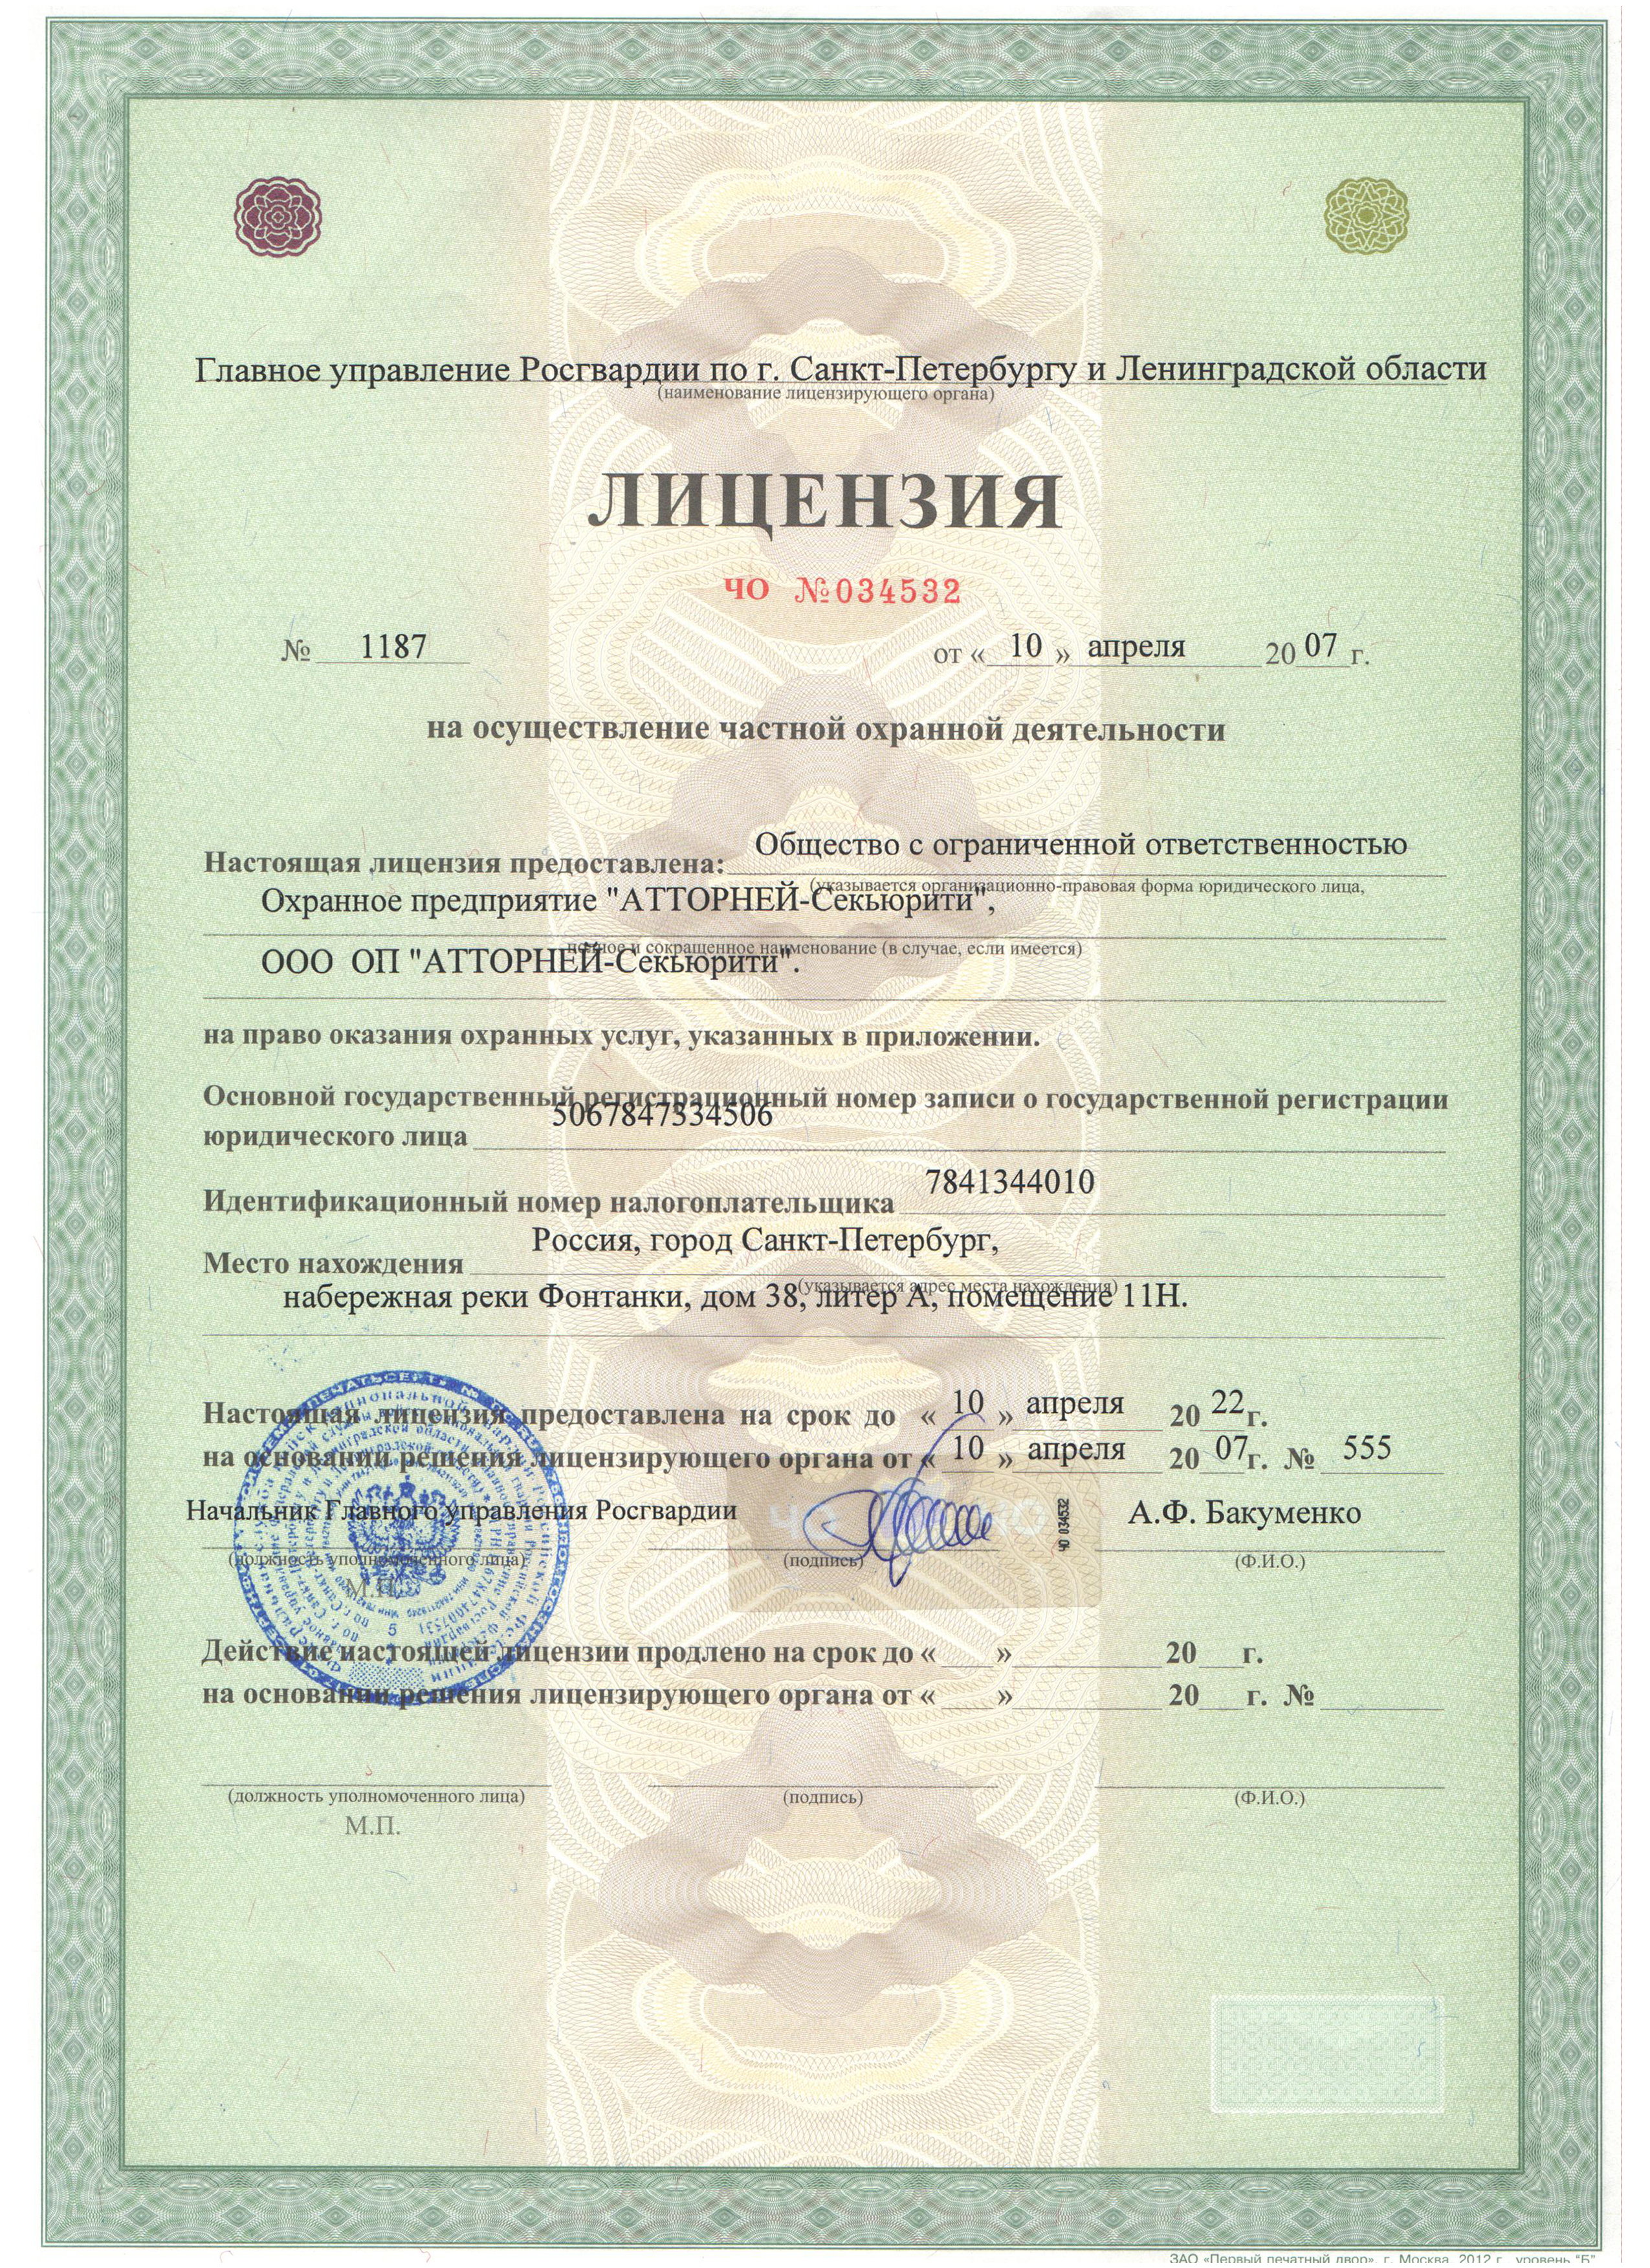 Лицензия на осуществление частной охранной деятельности по г. Санкт-Петербургу и Ленинградской области